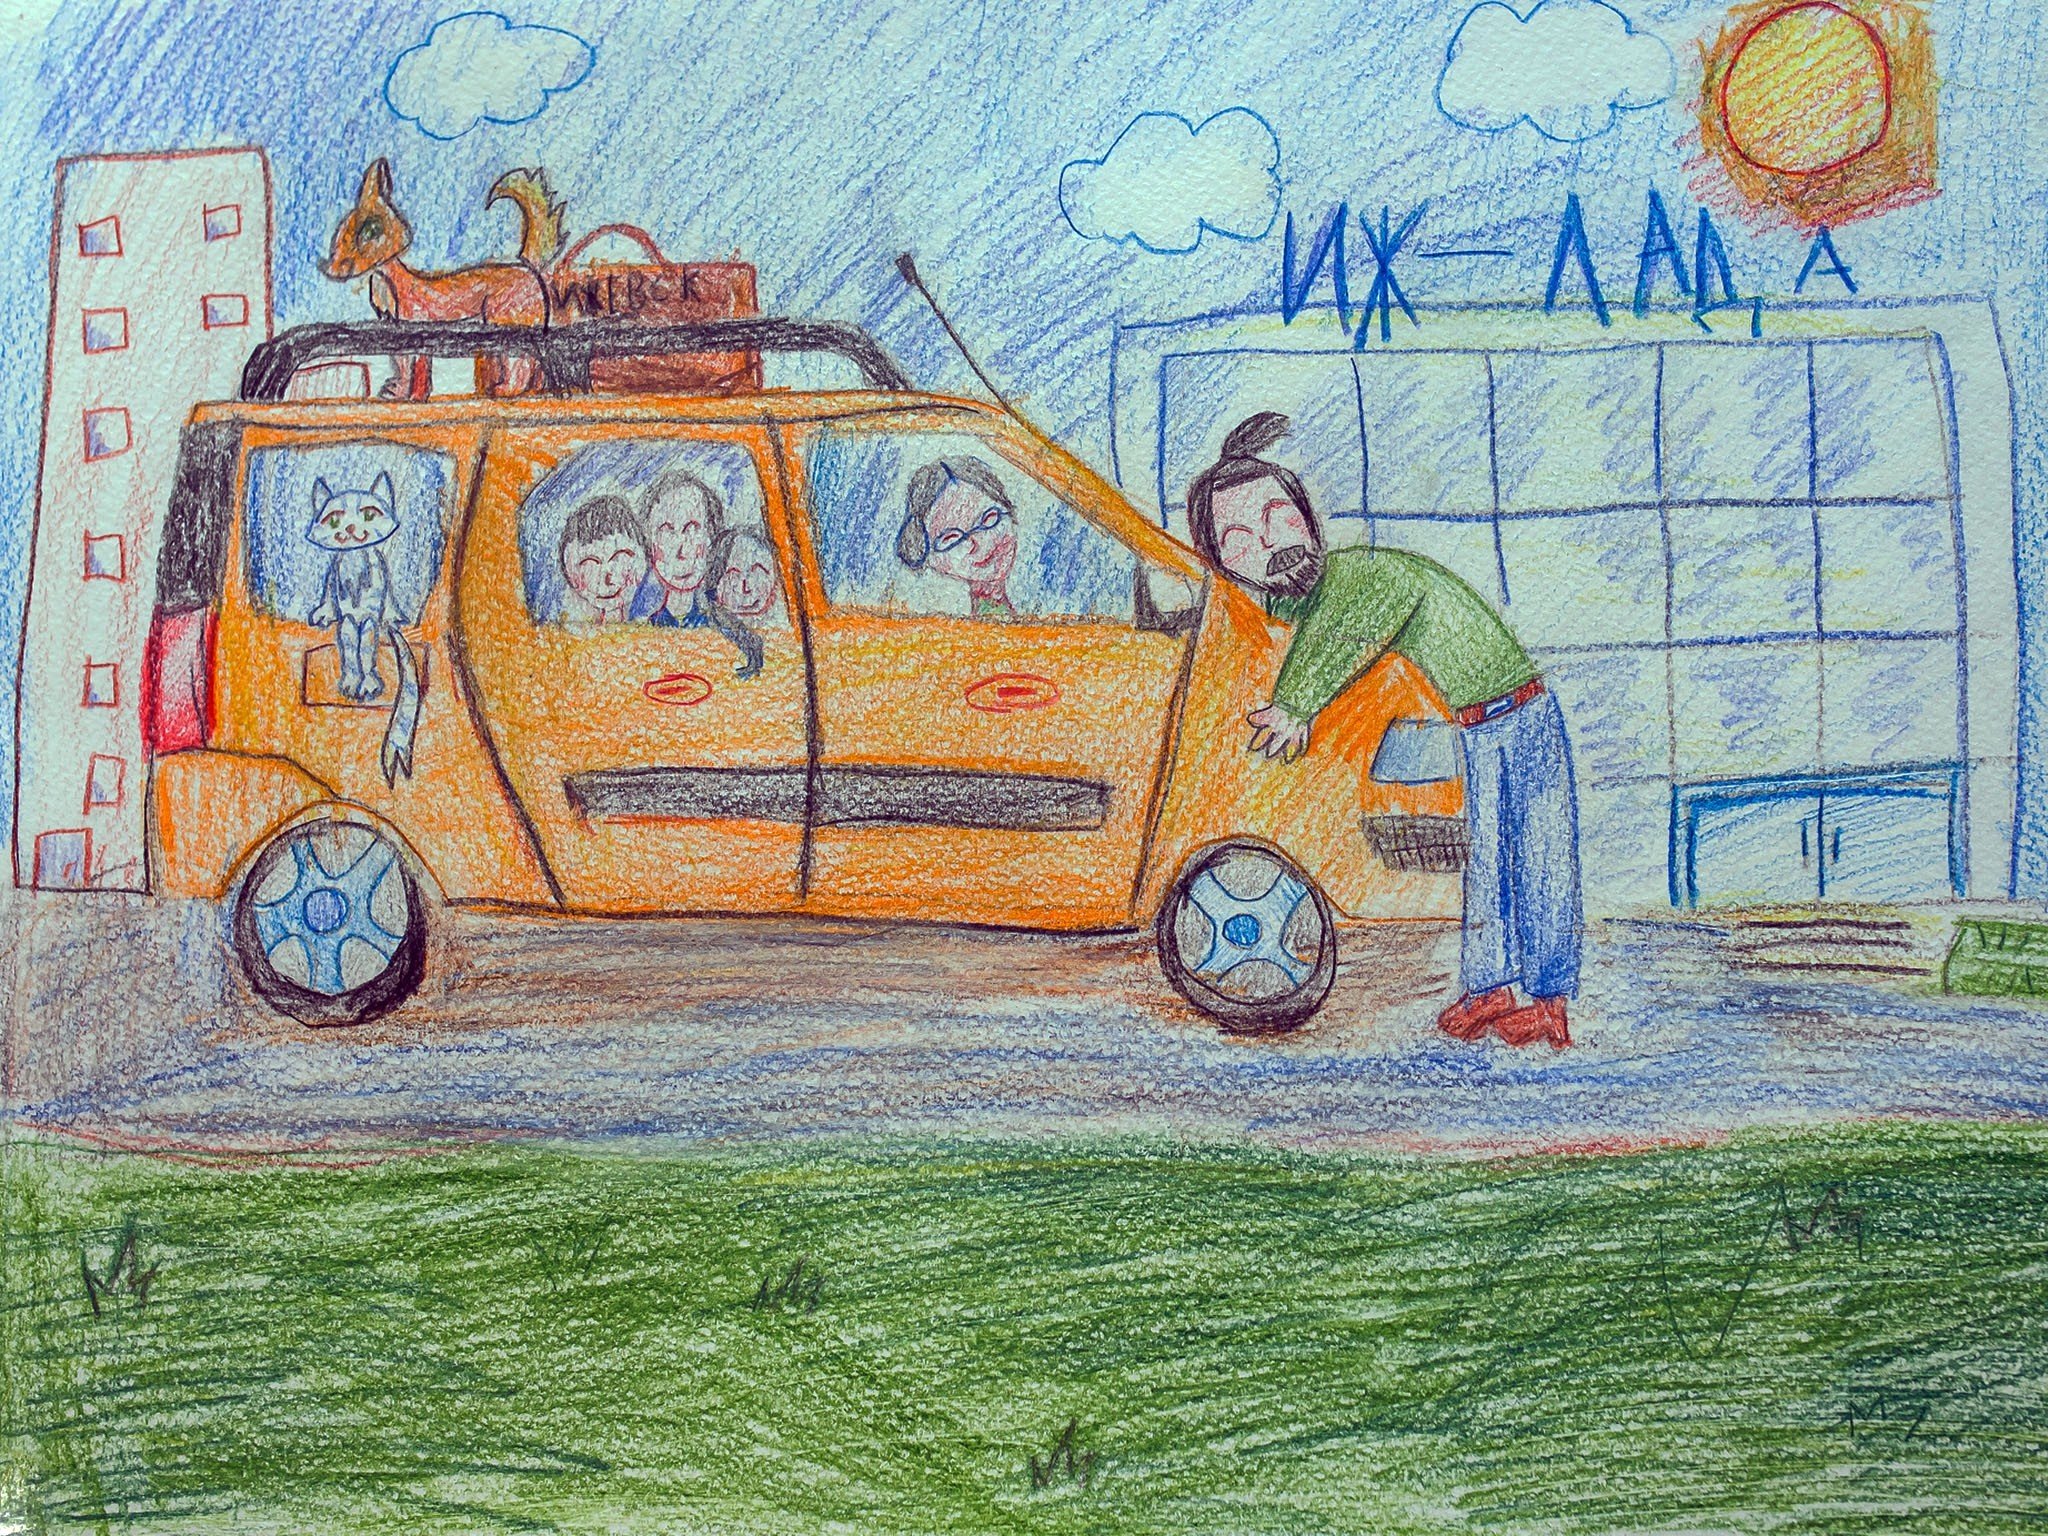 Машина рисунок для детей